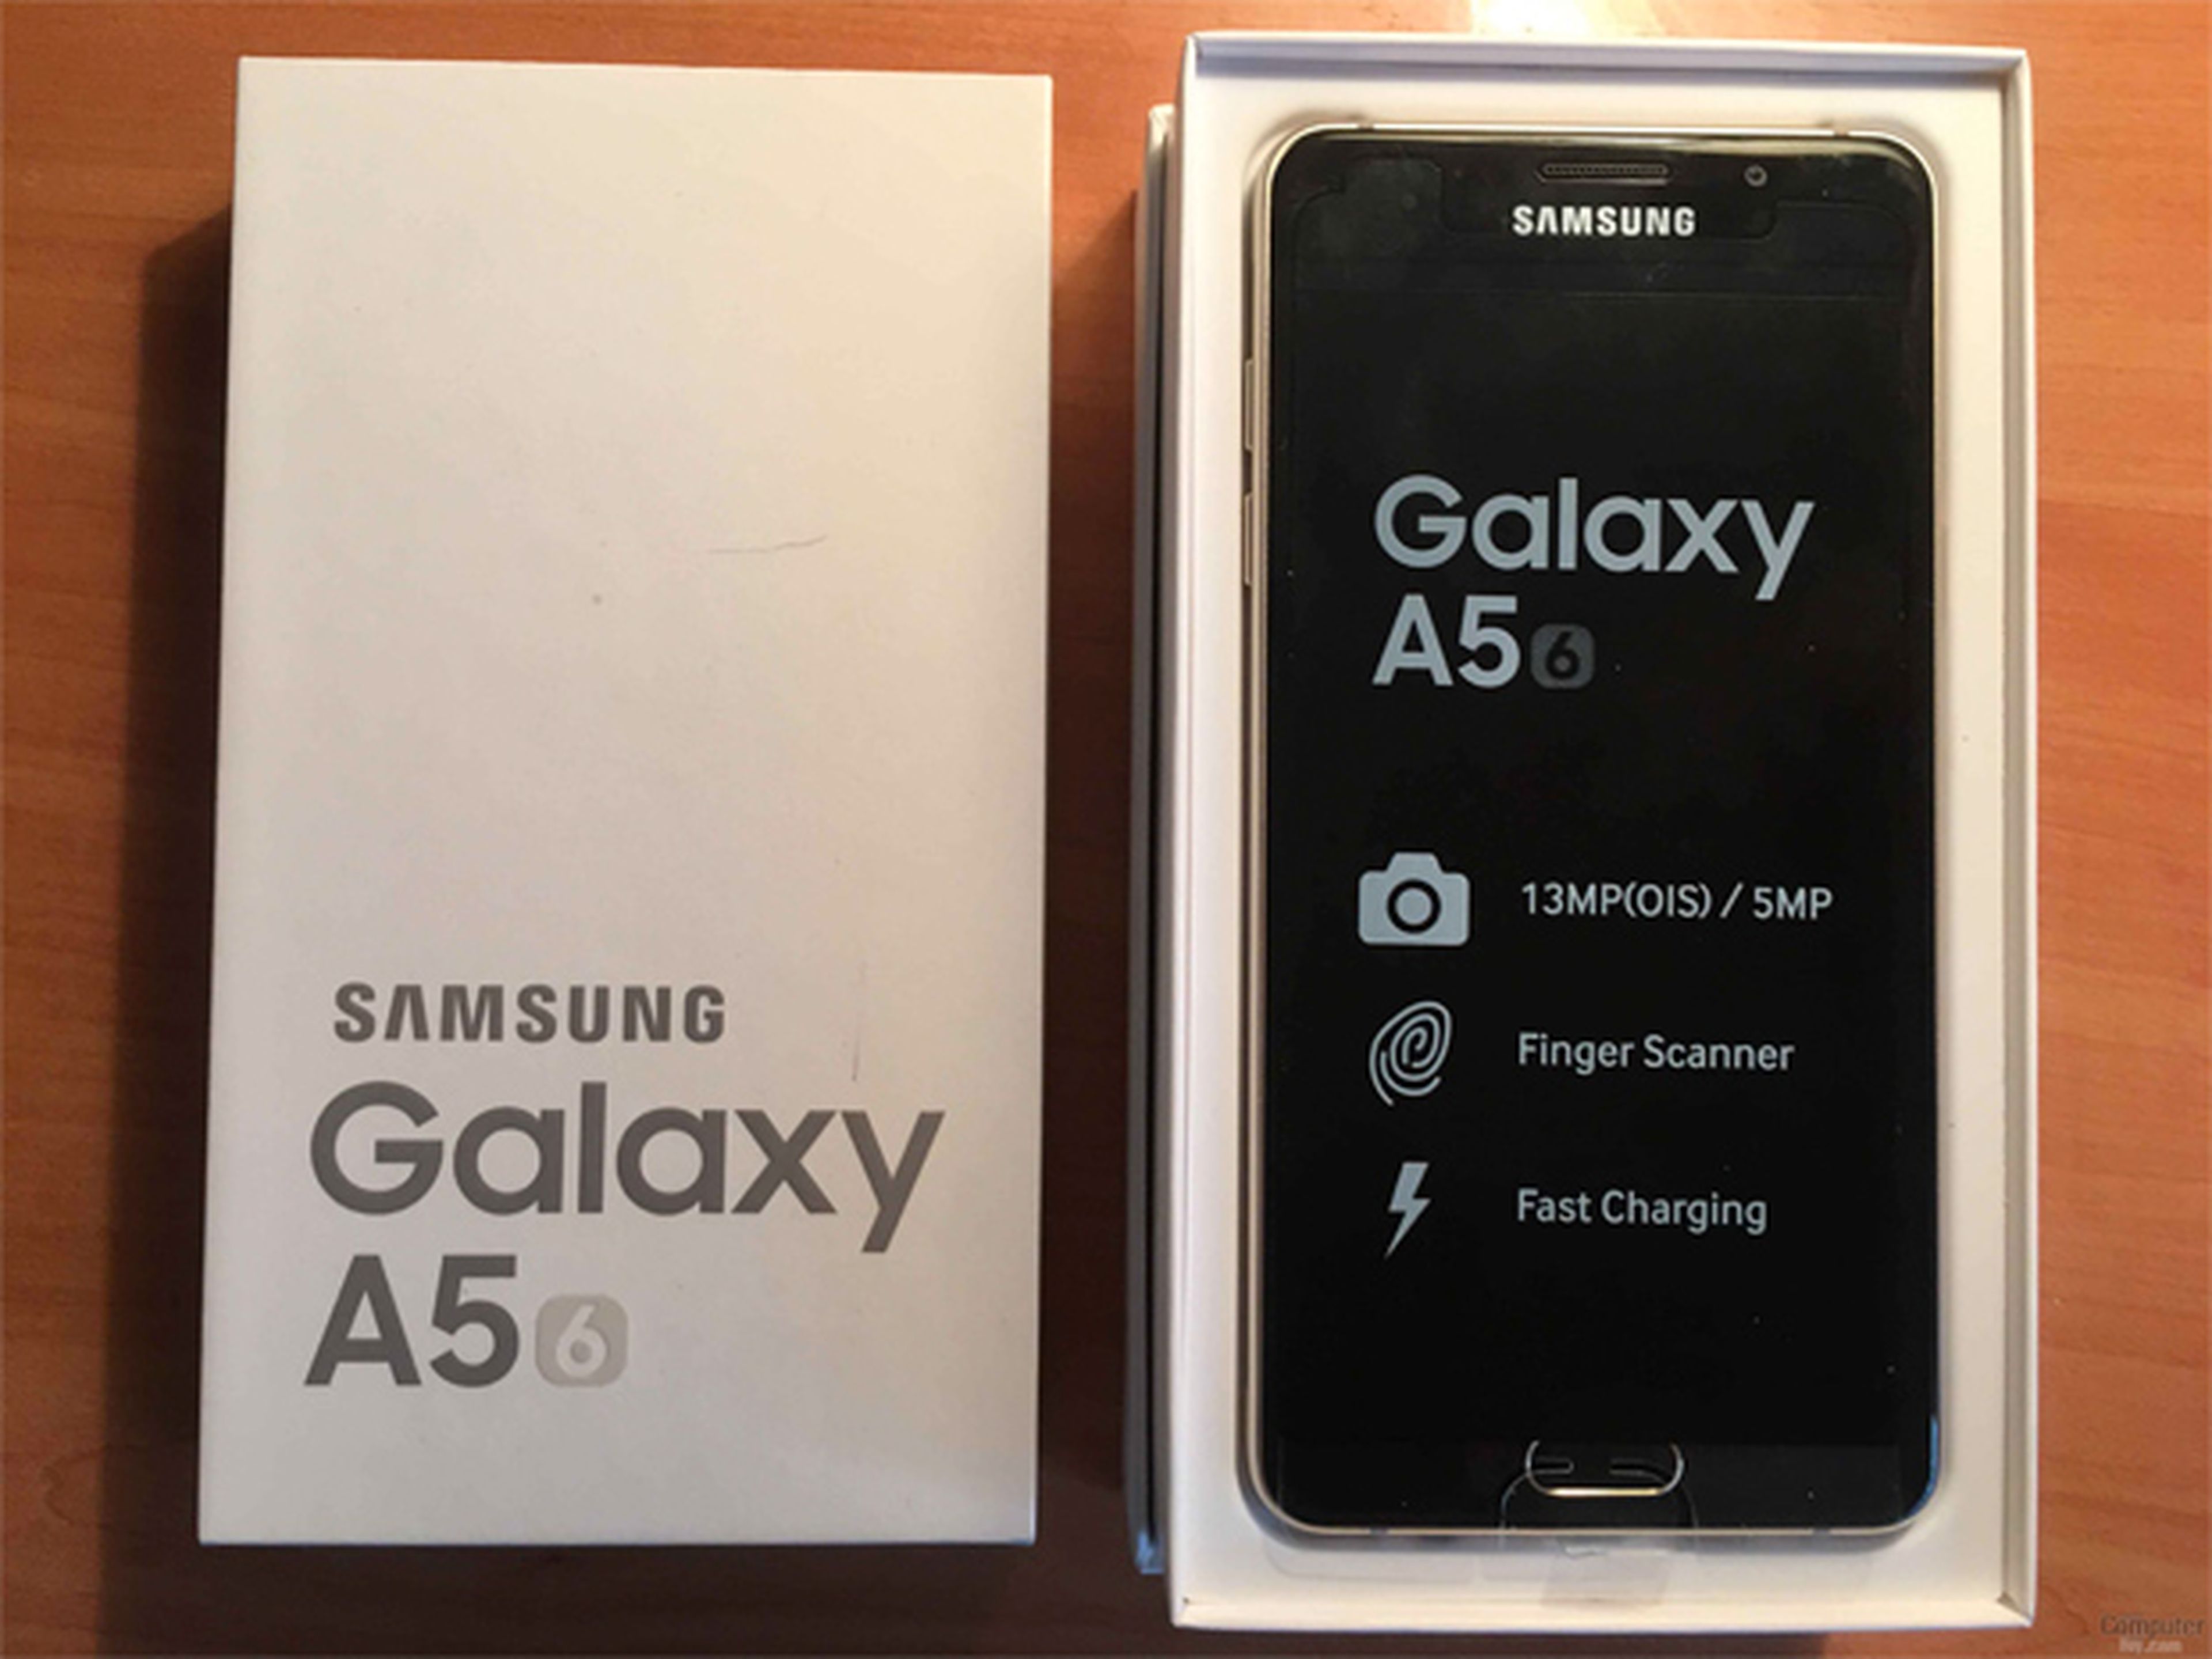 roto límite amargo Samsung Galaxy A5 2016, análisis y opinión | Computer Hoy